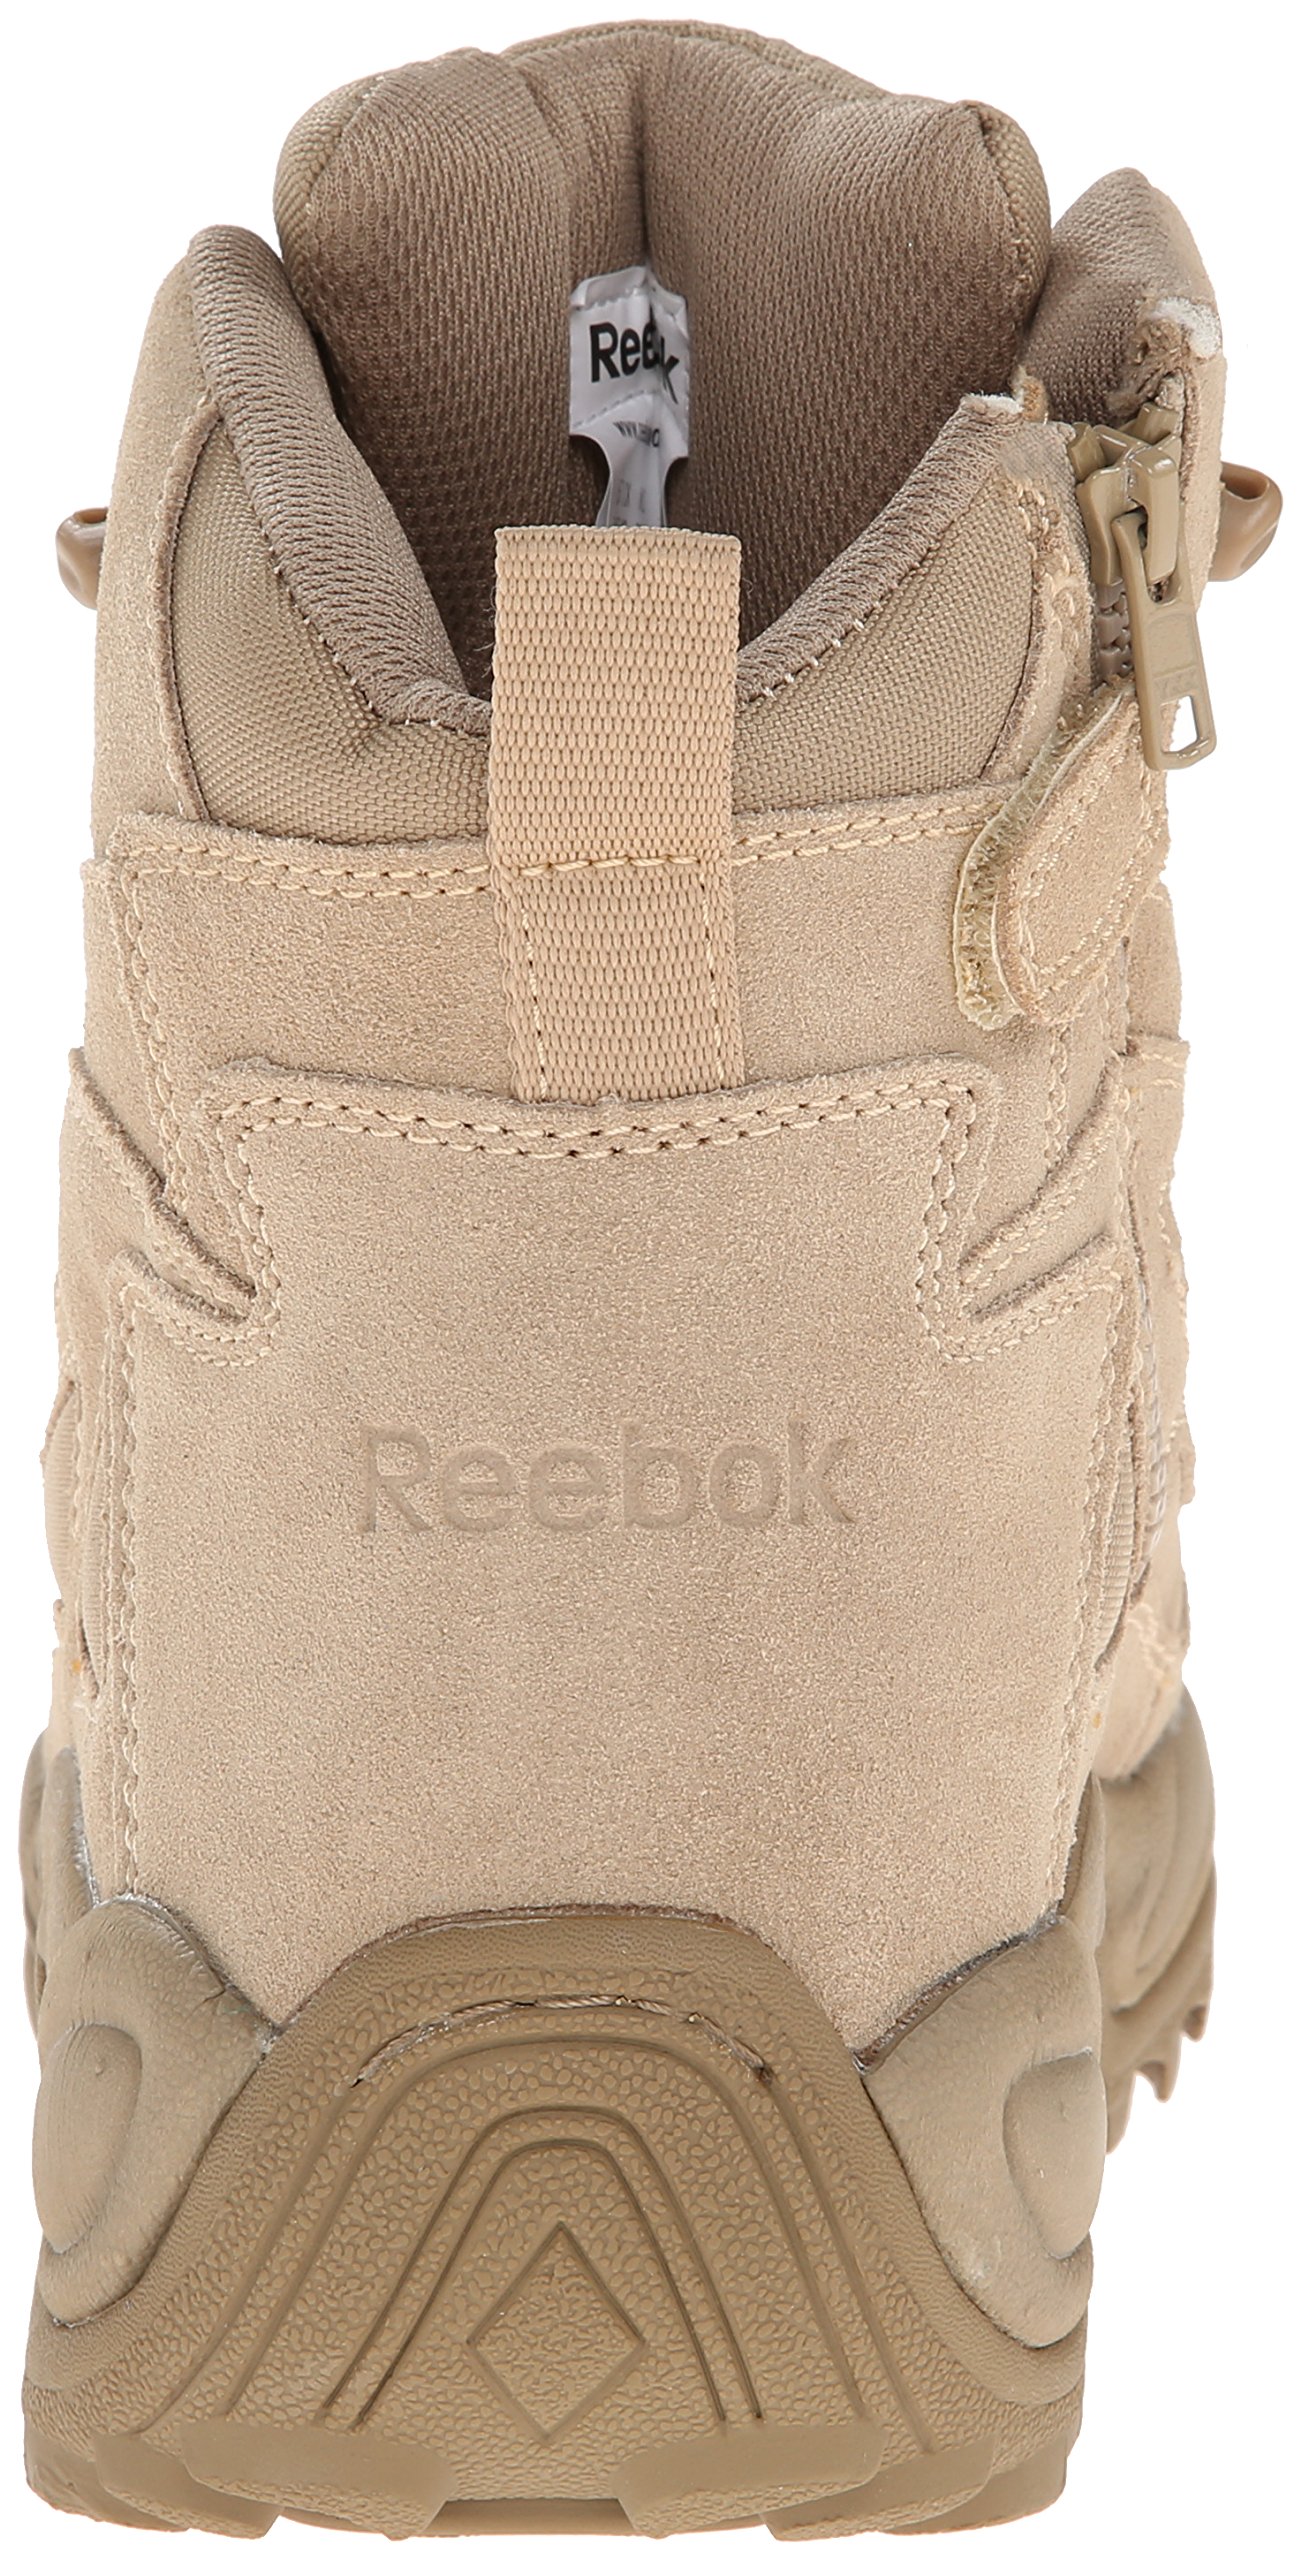 Reebok Work Men's Rapid Response RB8695 Safety Boot,Tan